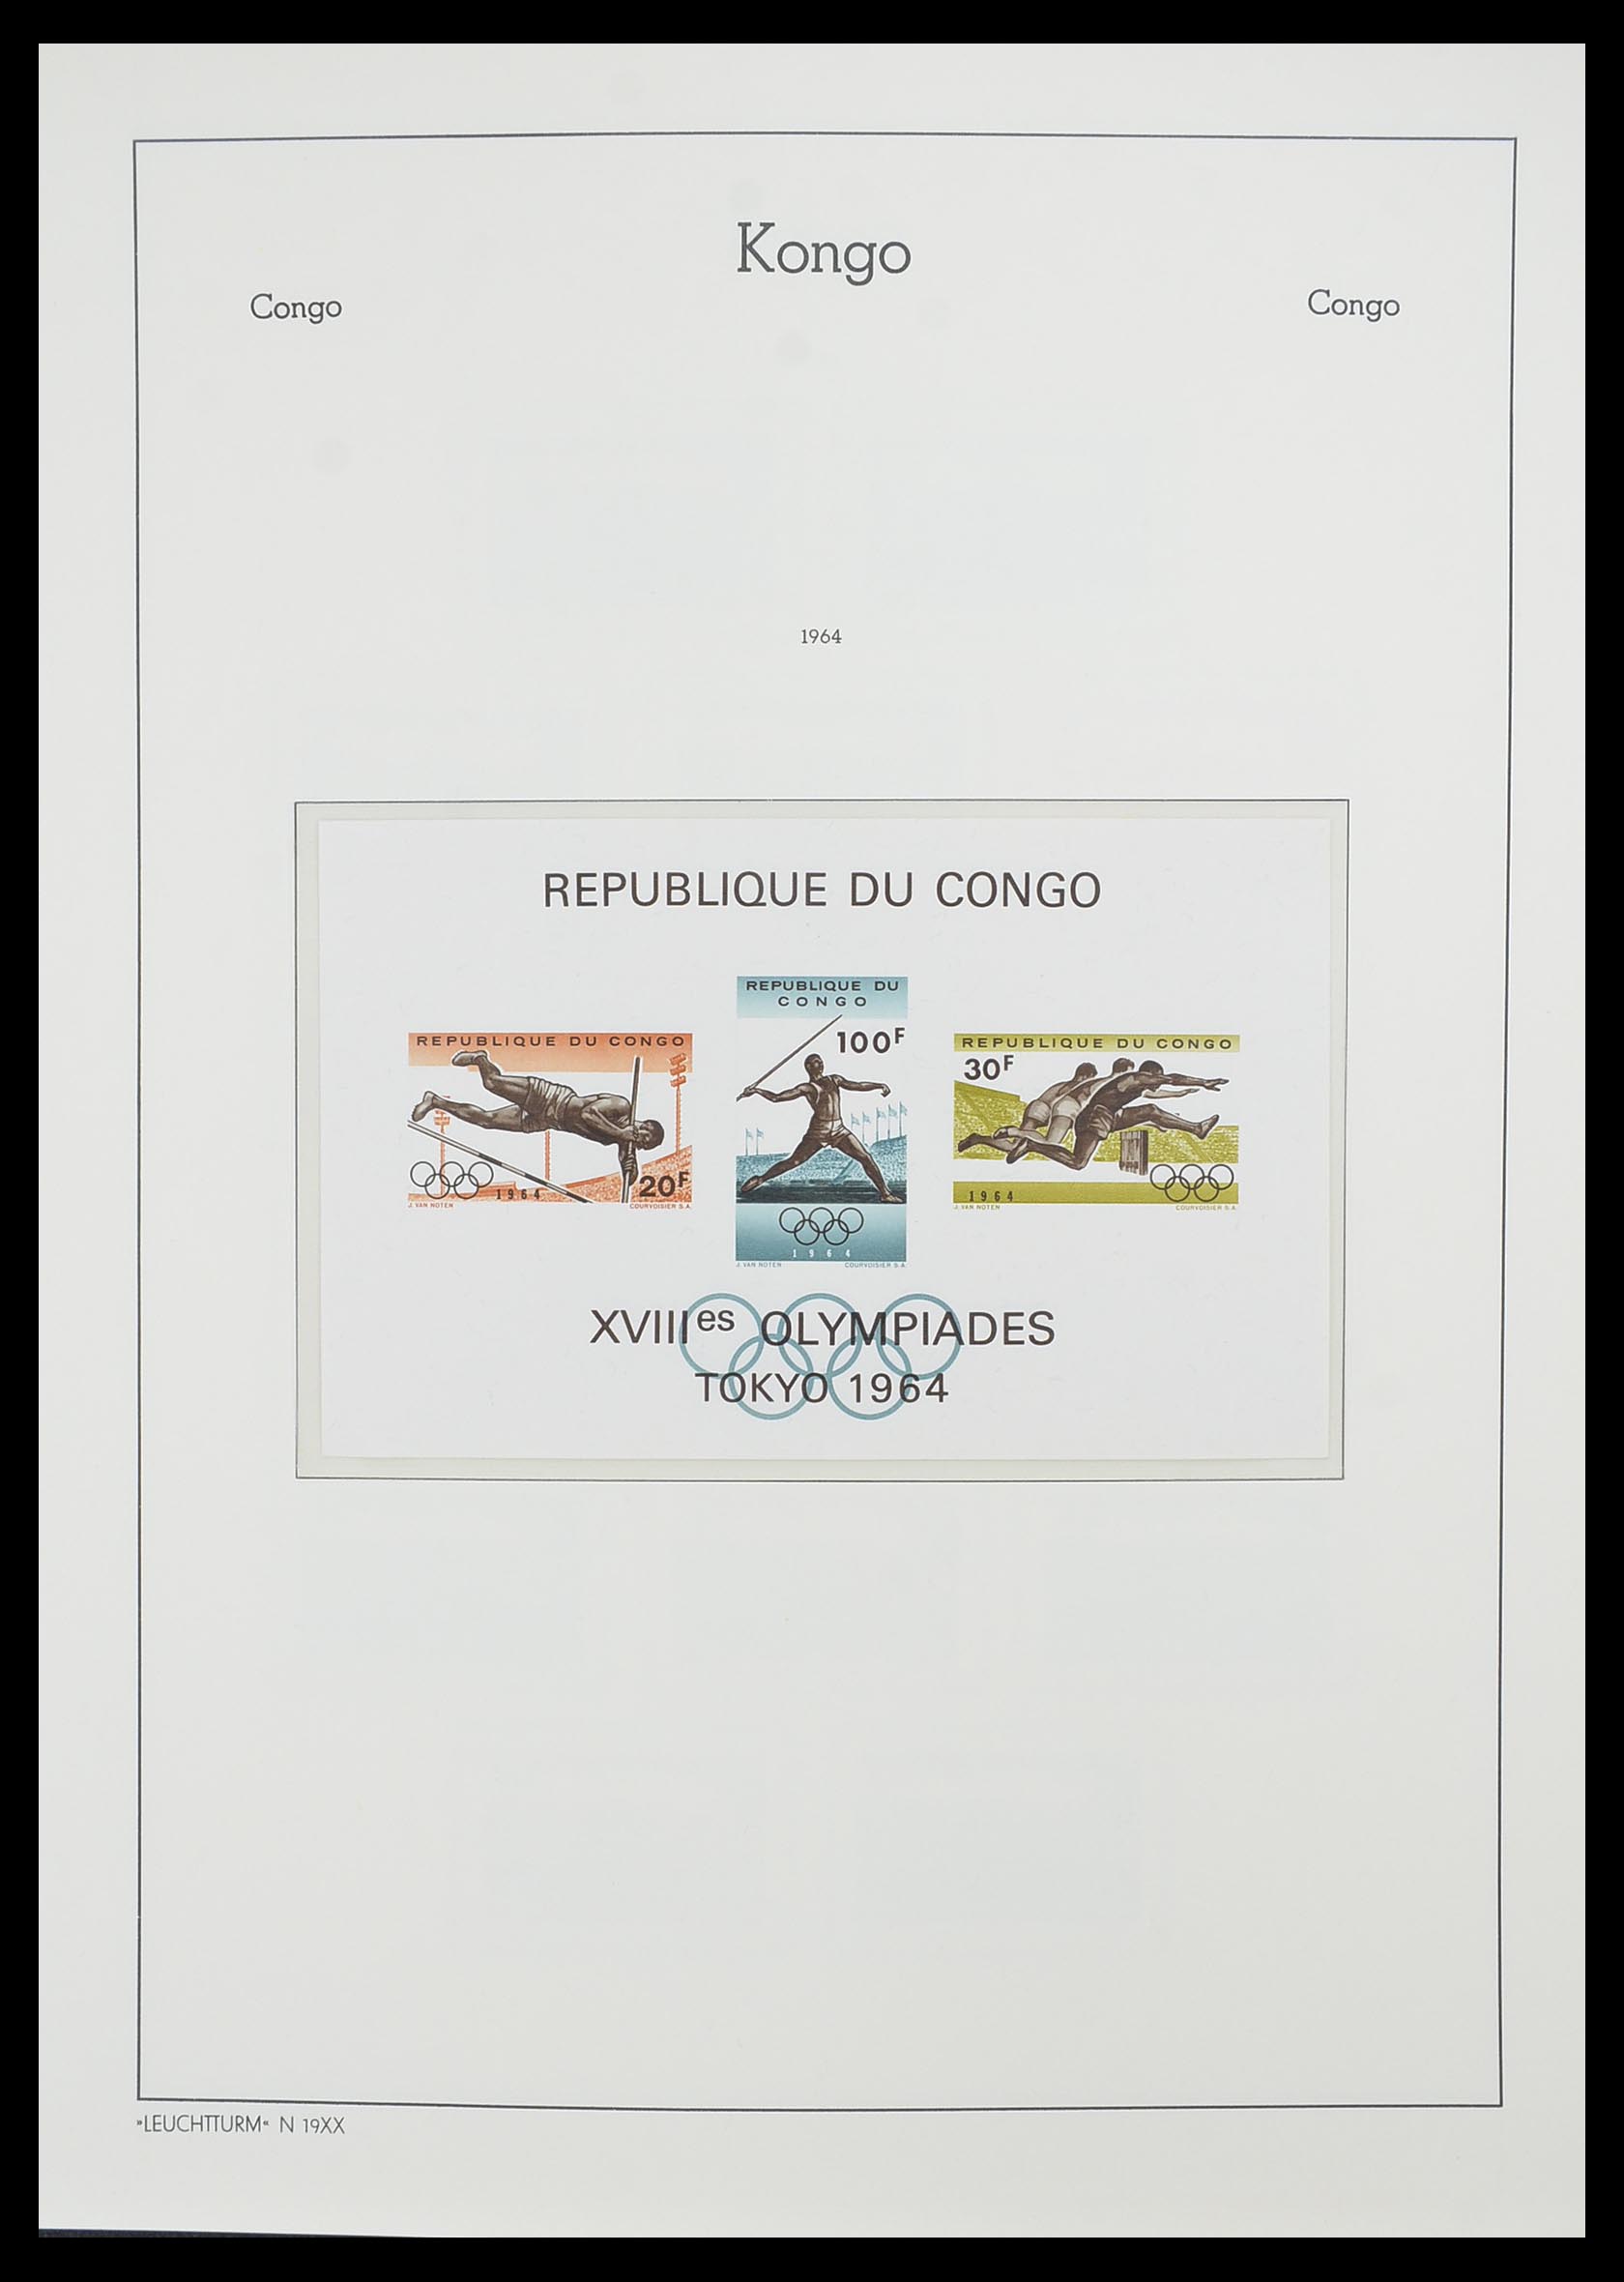 33768 025 - Stamp collection 33768 Congo/Zaïre 1960-2006.